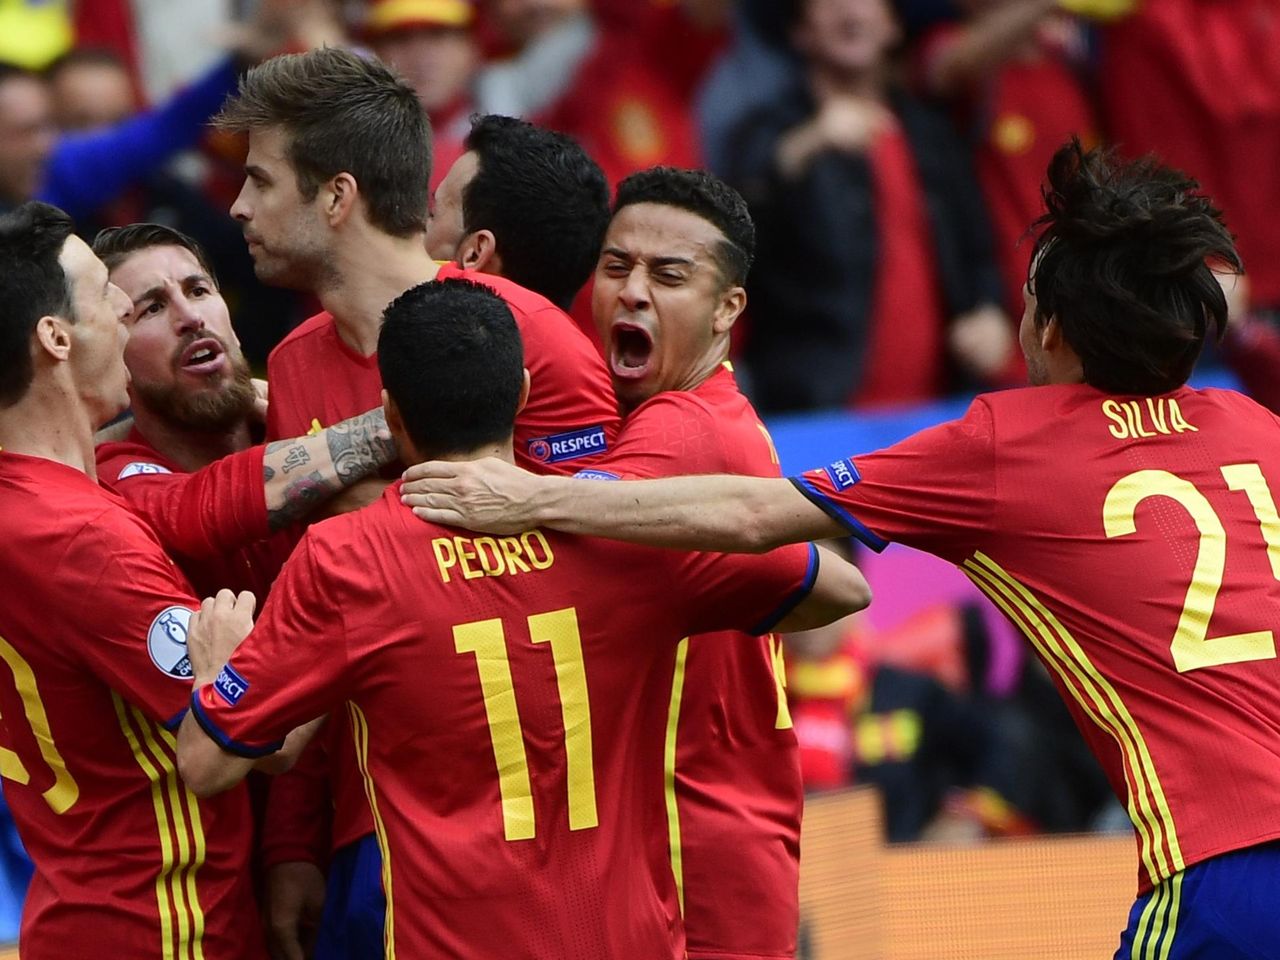 Eurocopa 2016: España vs Checa: Resultado resumen partido - Eurosport